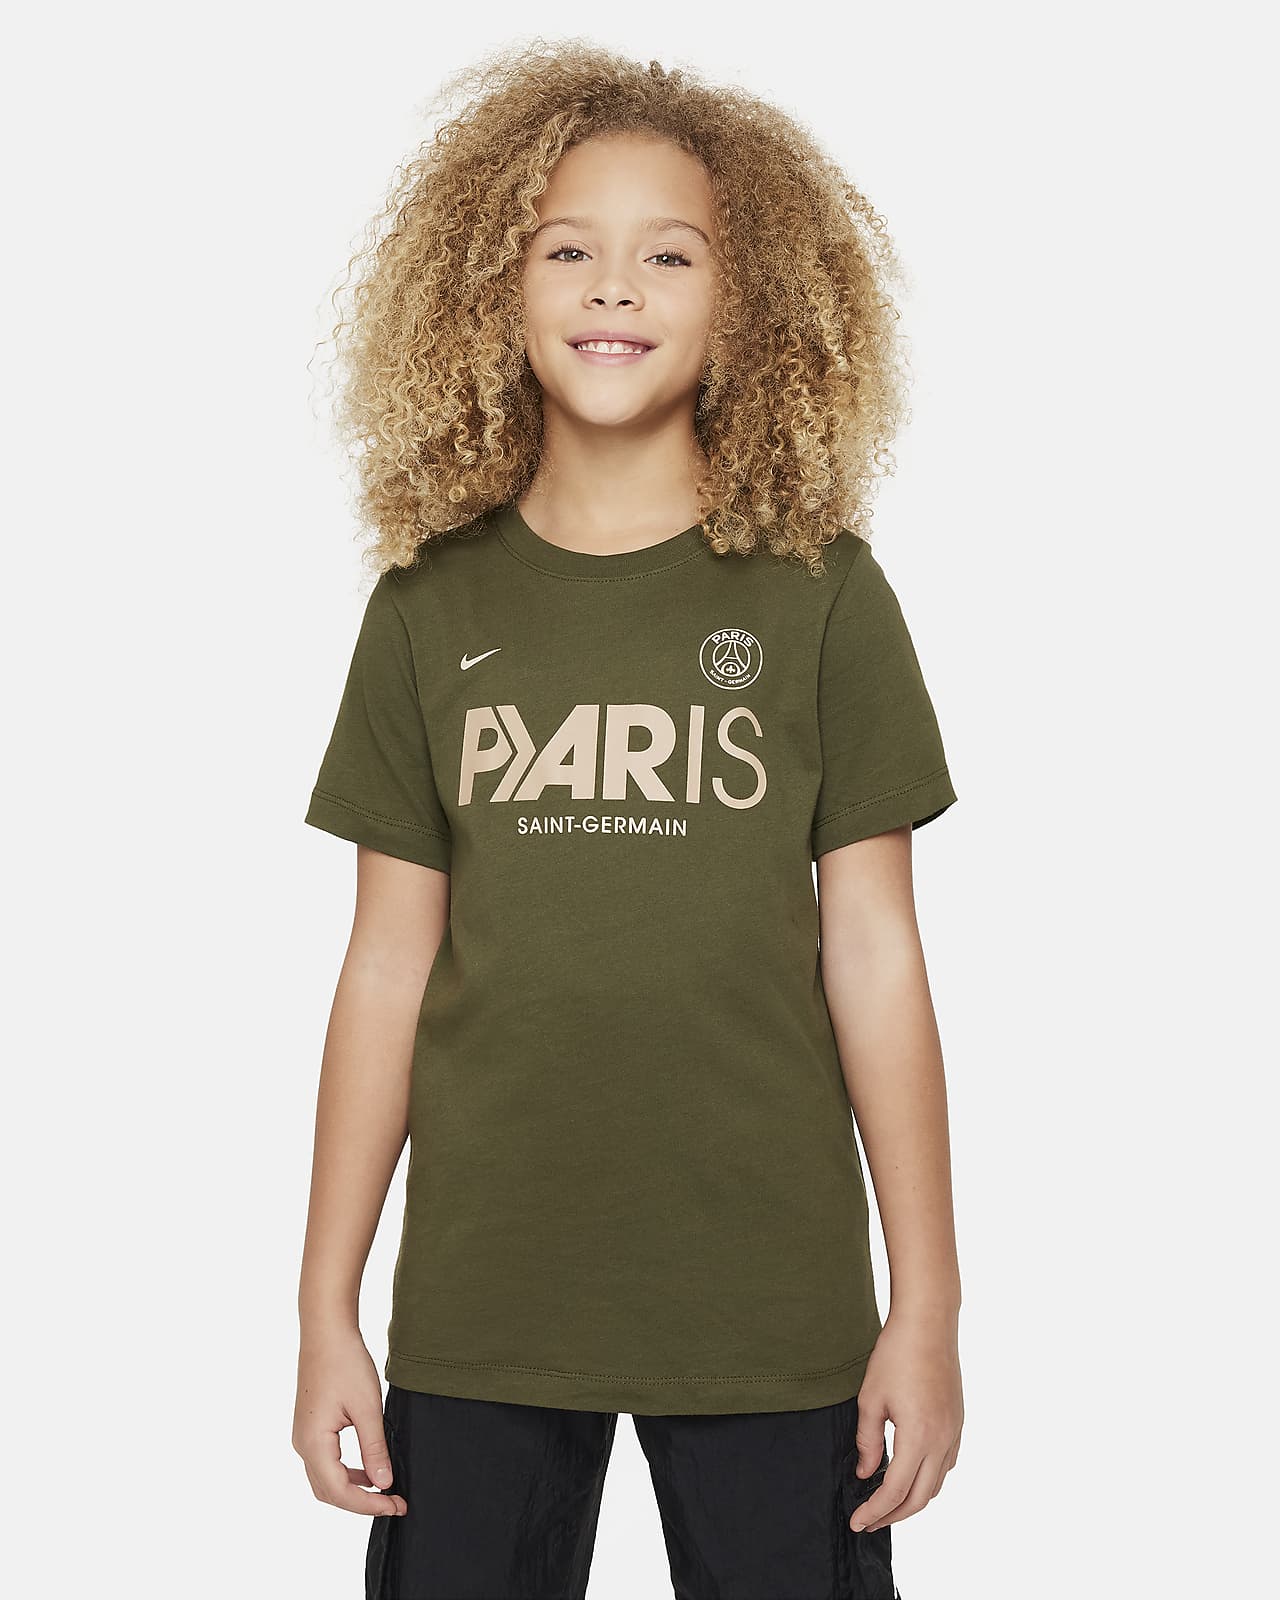 Ποδοσφαιρικό T-Shirt Nike Παρί Σεν Ζερμέν Mercurial για μεγάλα παιδιά